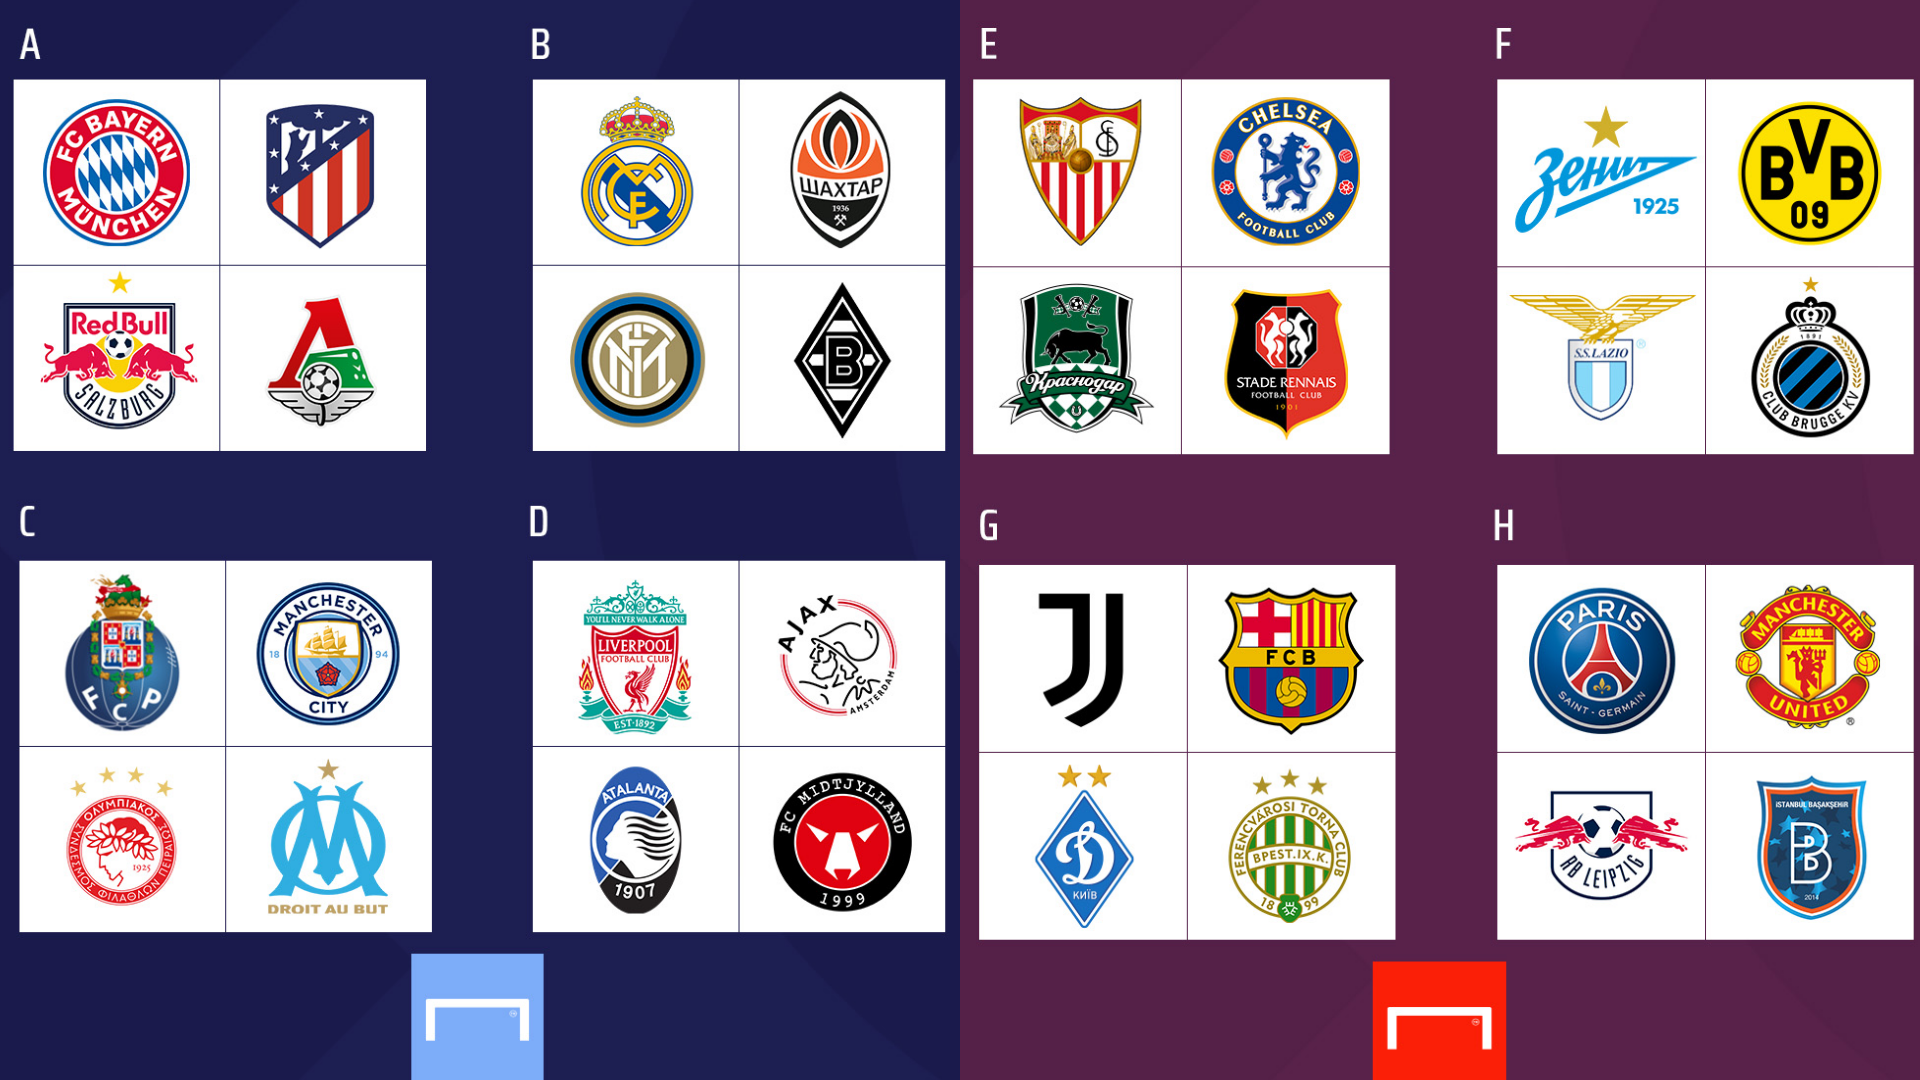 Calendario de la fase de grupos de la Champions League partidos, jornadas, fechas y horarios Goal.com Espana